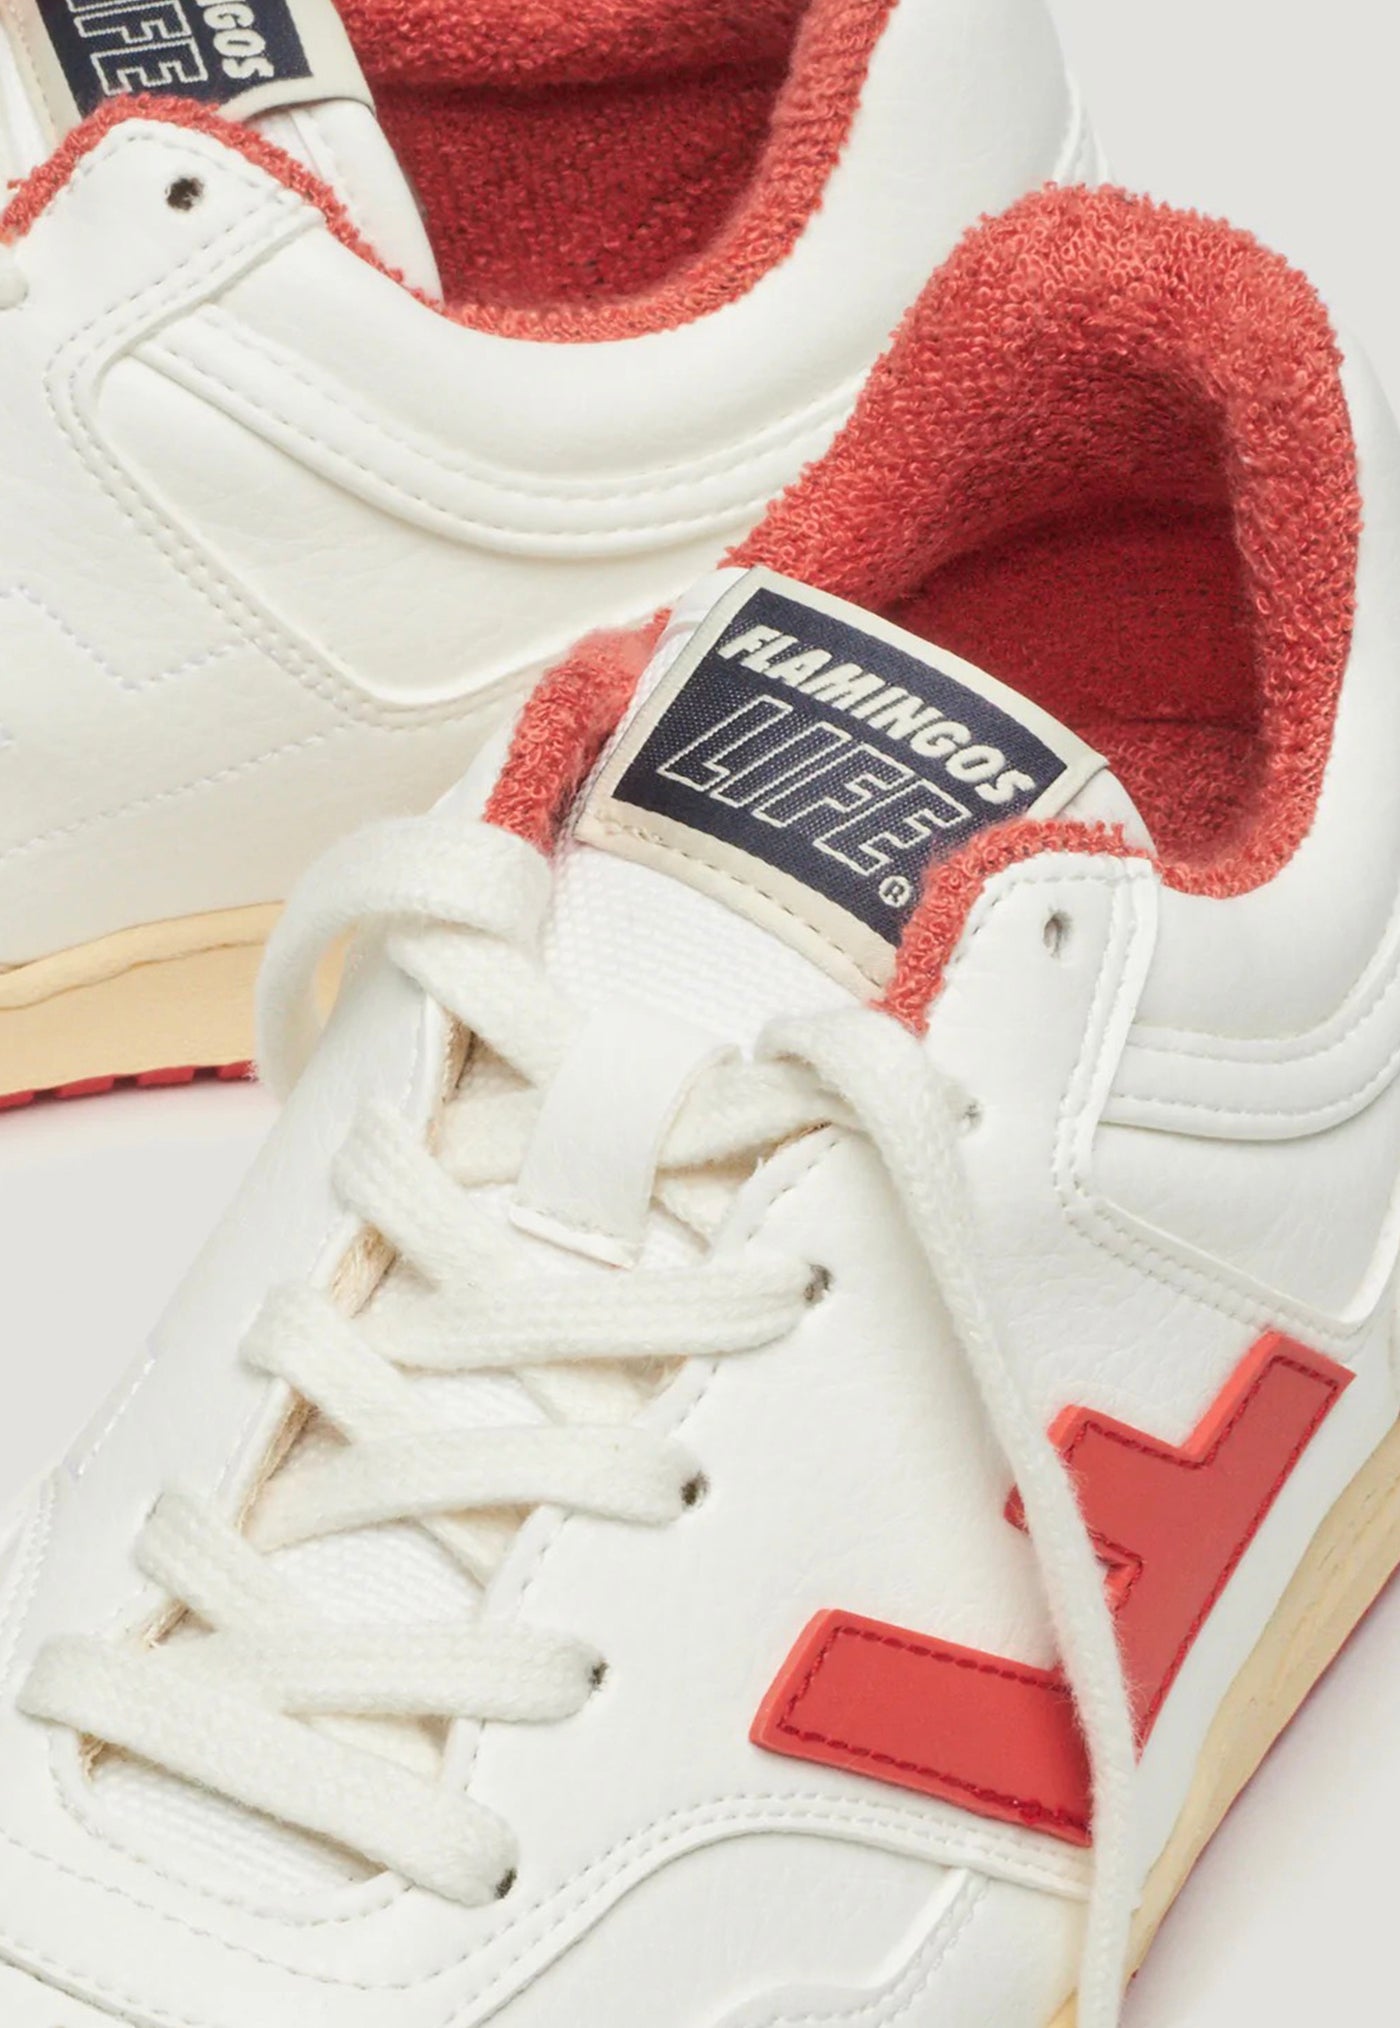 Retro 90s Sneaker - White Vanilla Tomato sold by Angel Divine